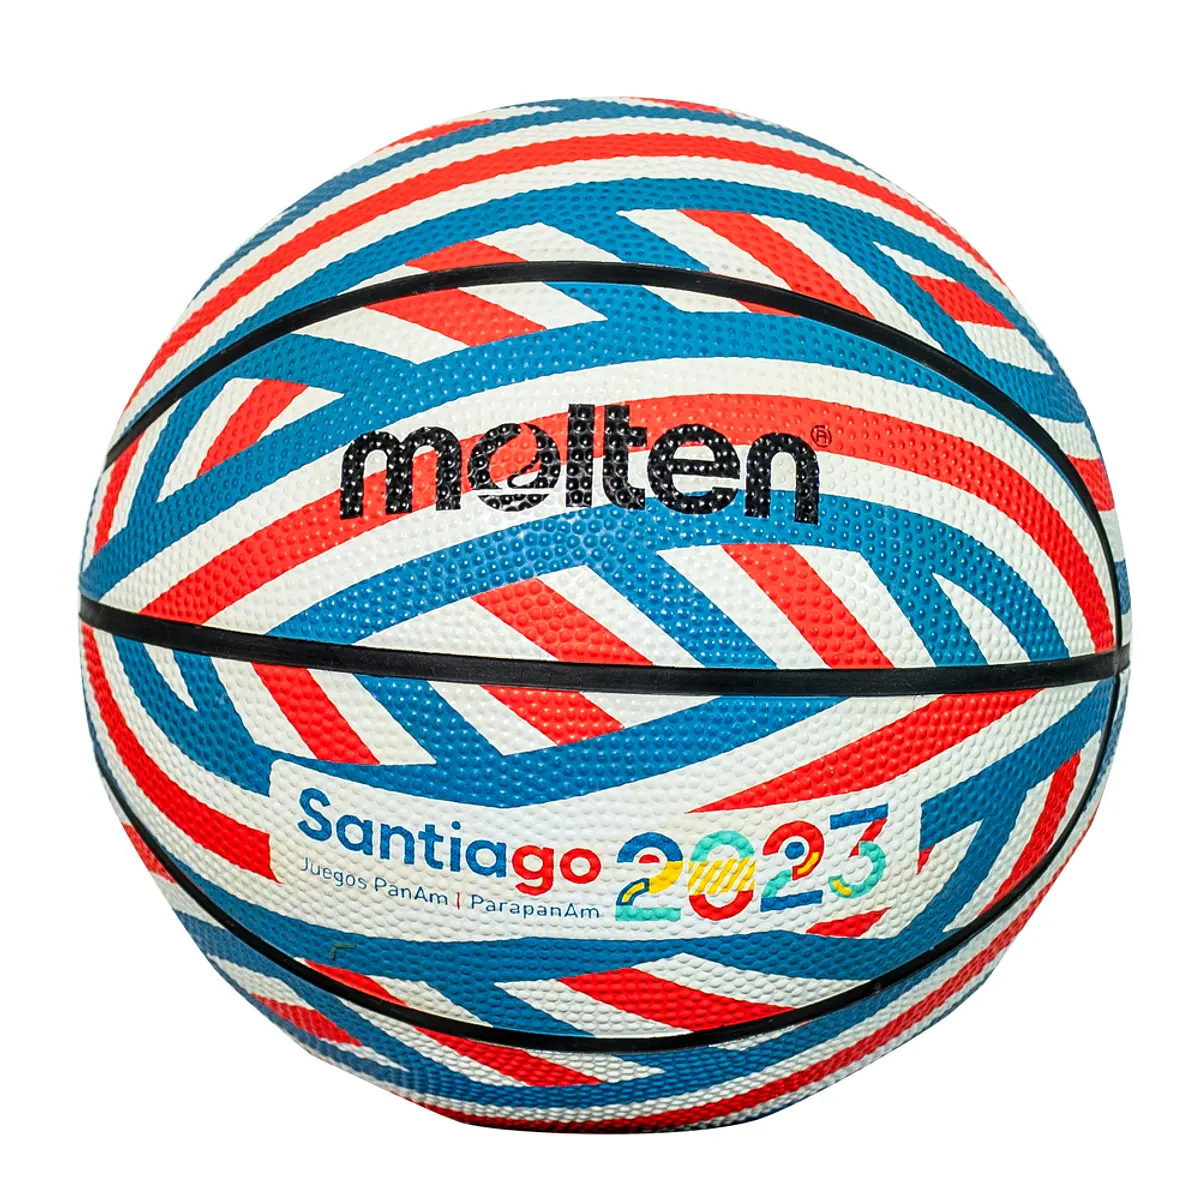 Balón De Basketball Molten Stgo 2023 Multicolor MO21872